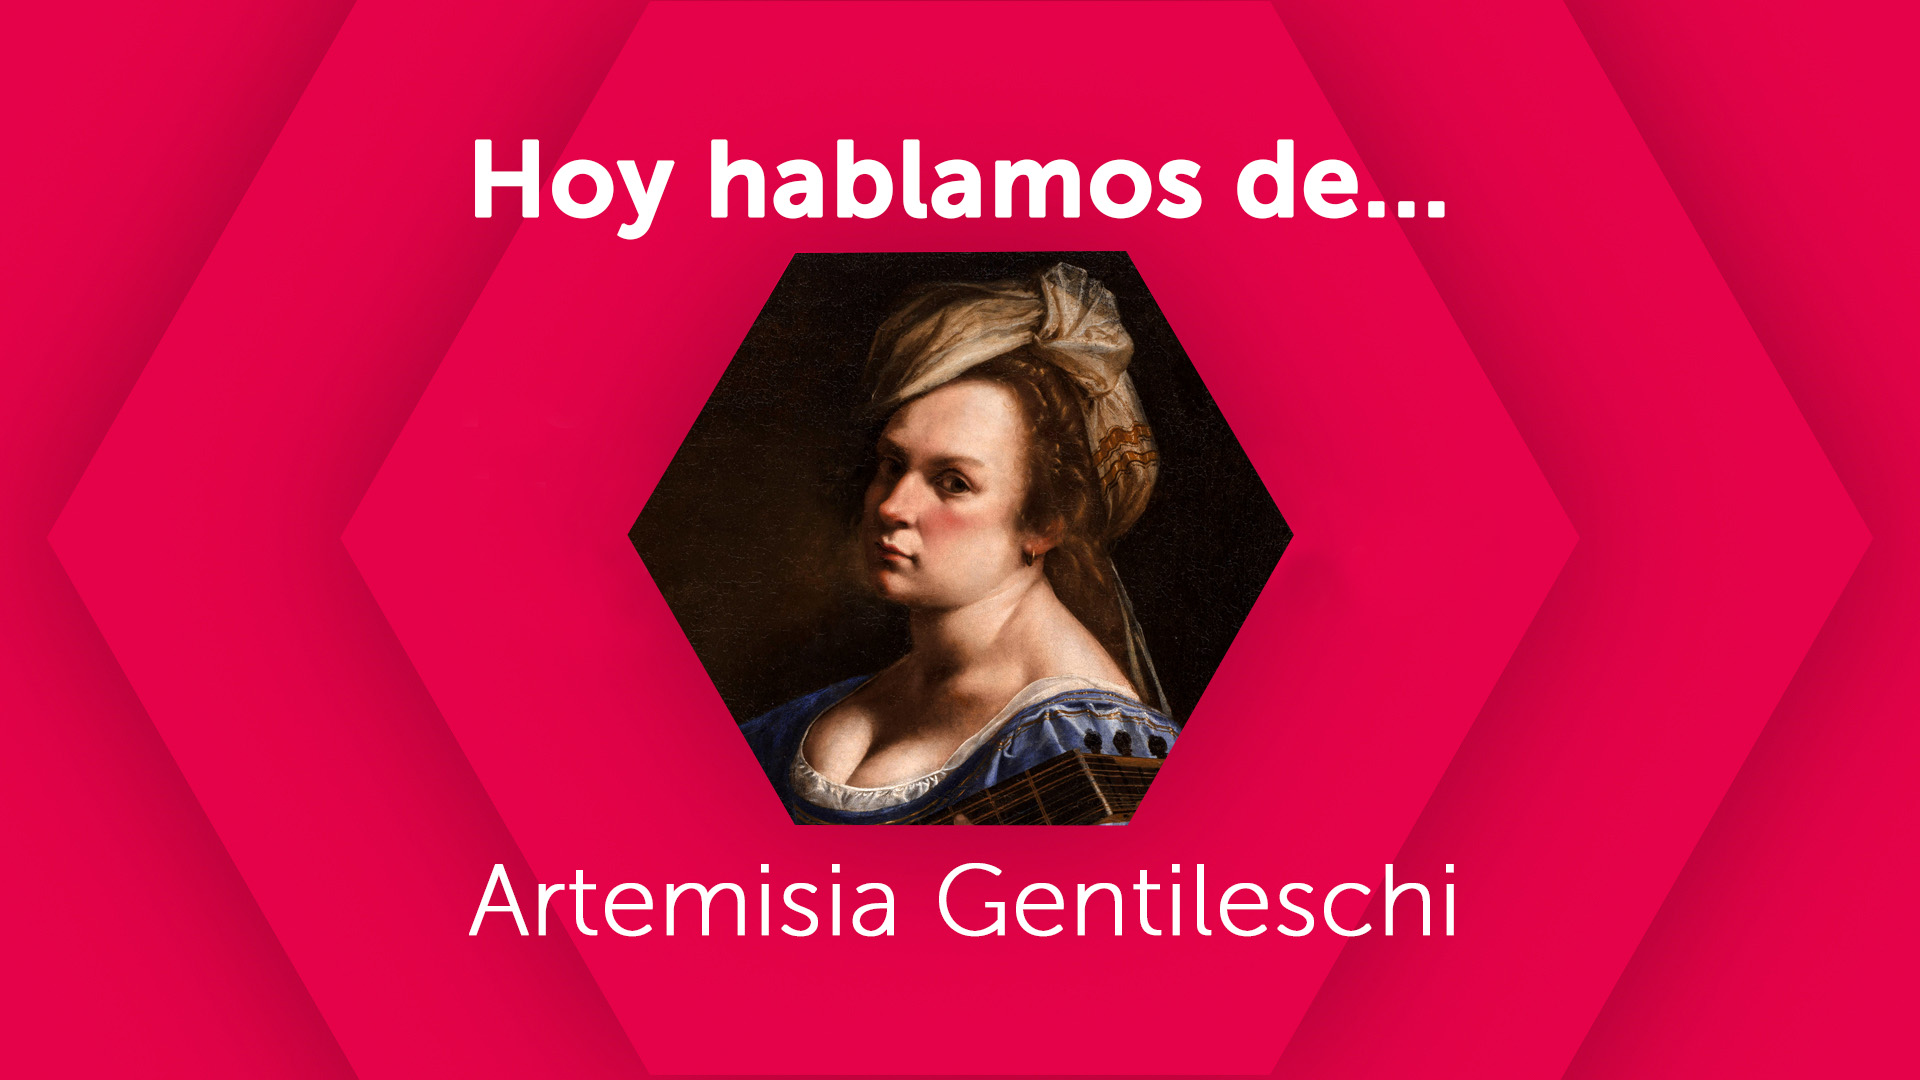 Hoy hablamos de Artemisia Gentileschi